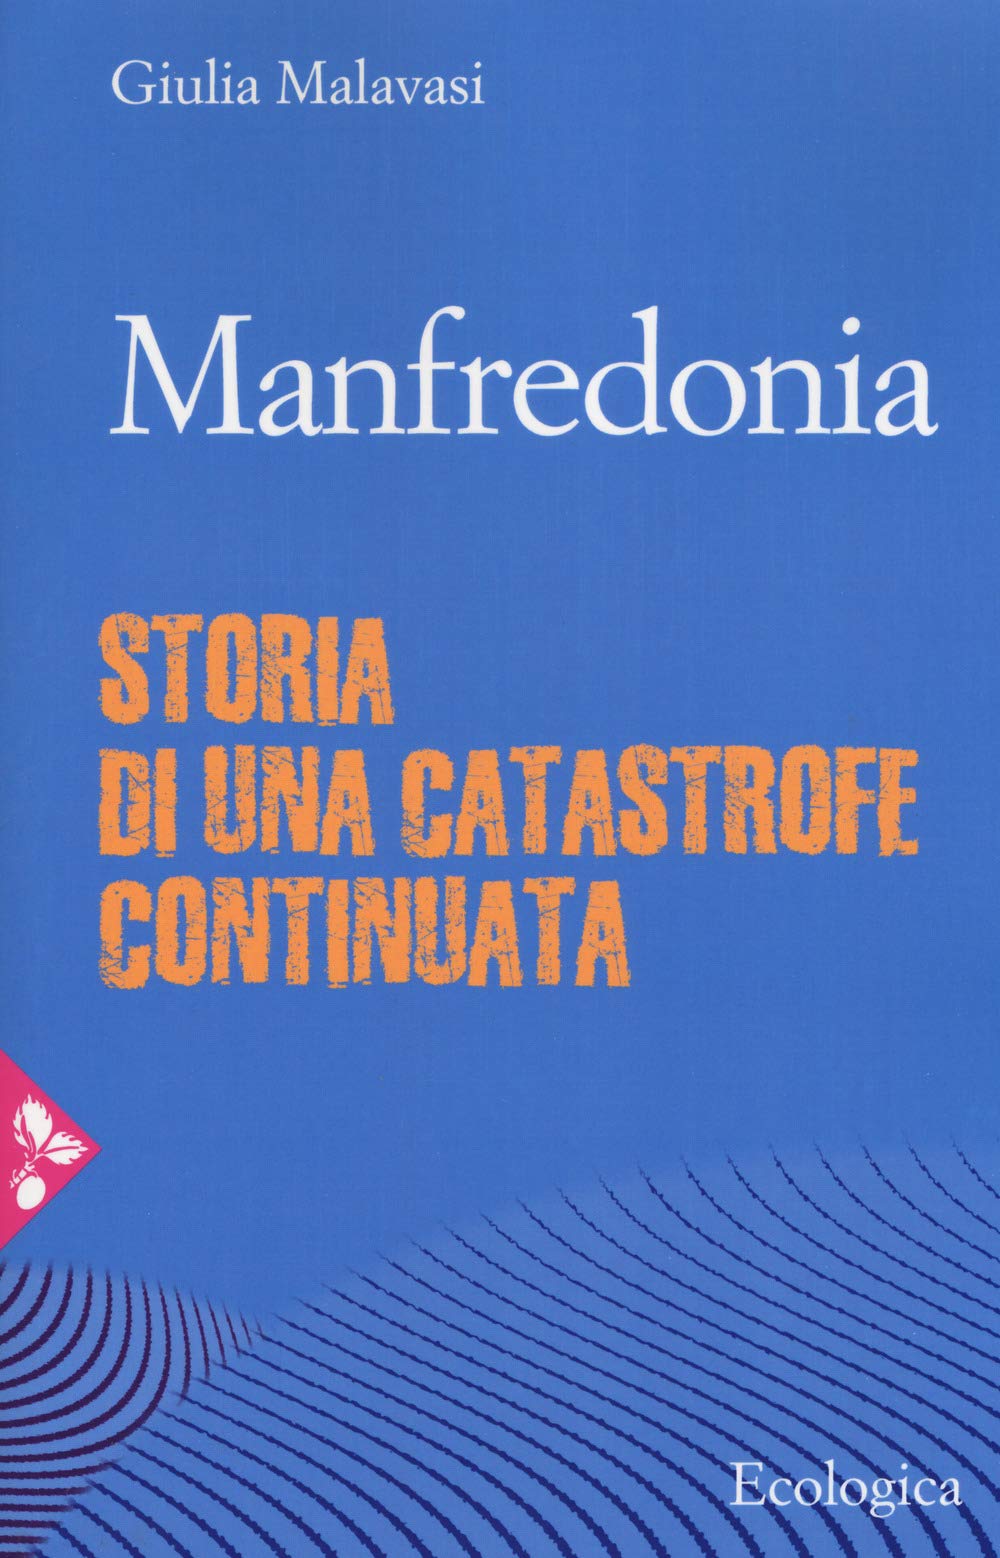 Presentazione del libro "Manfredonia. Storia di una catastrofe continuata" - Sab. 2/2 Cons. Reg. Toscana, Via Cavour 4 (FI)